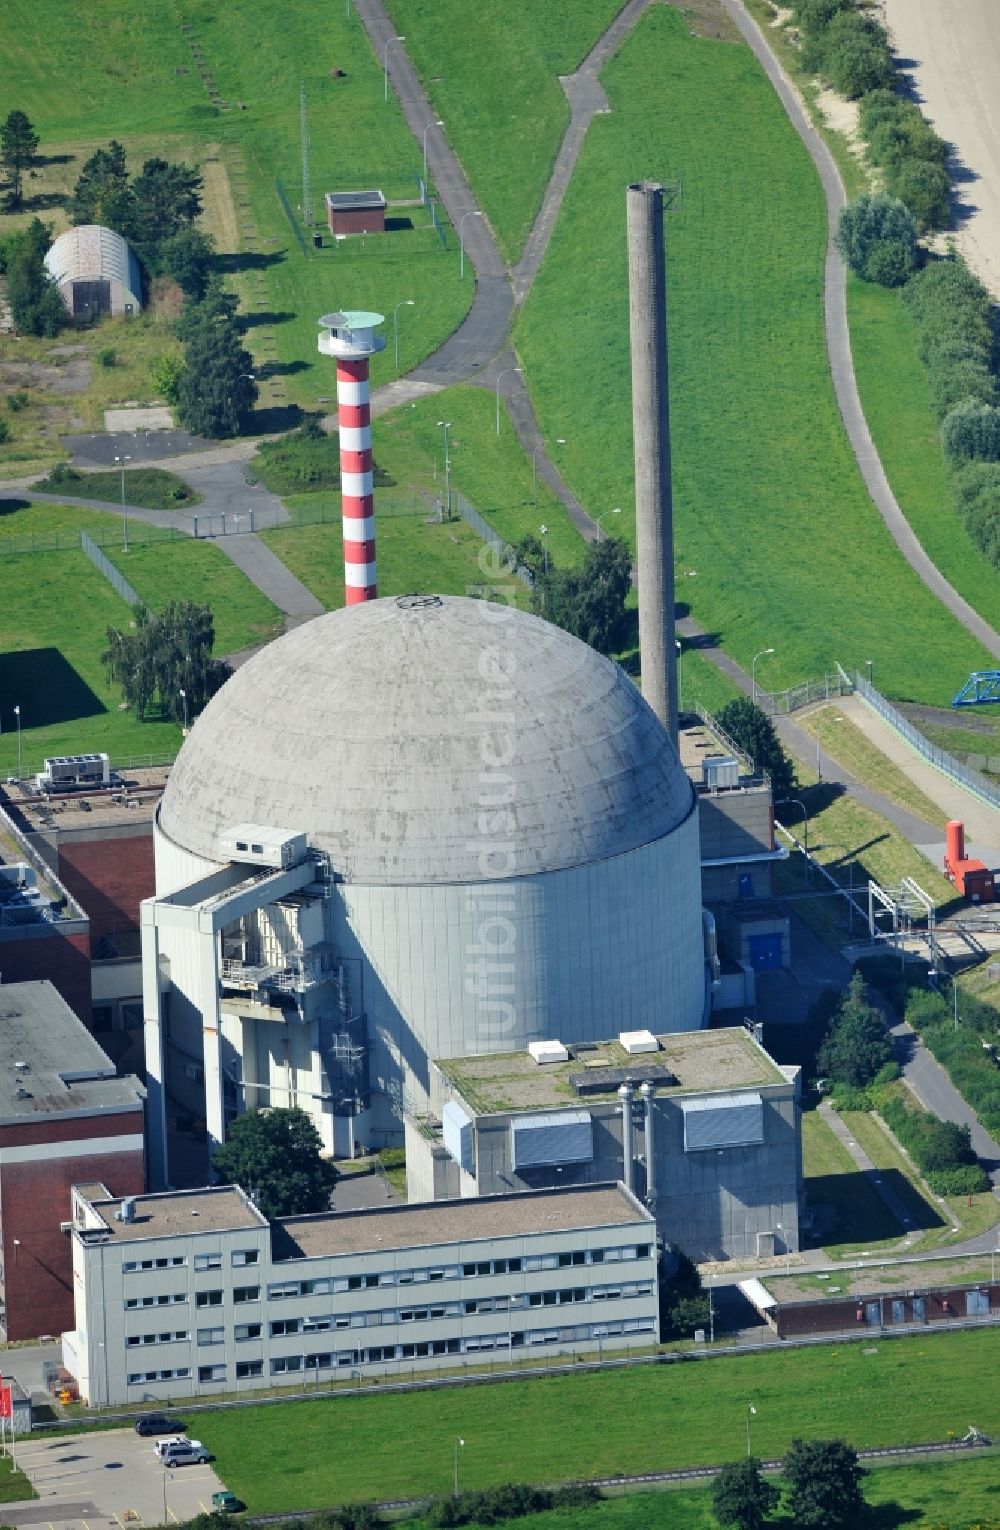 Luftaufnahme Stade - Blick auf das Kernkraftwerk Stade in der gleichnamigen Stadt in dem Bundesland Niedersachsen